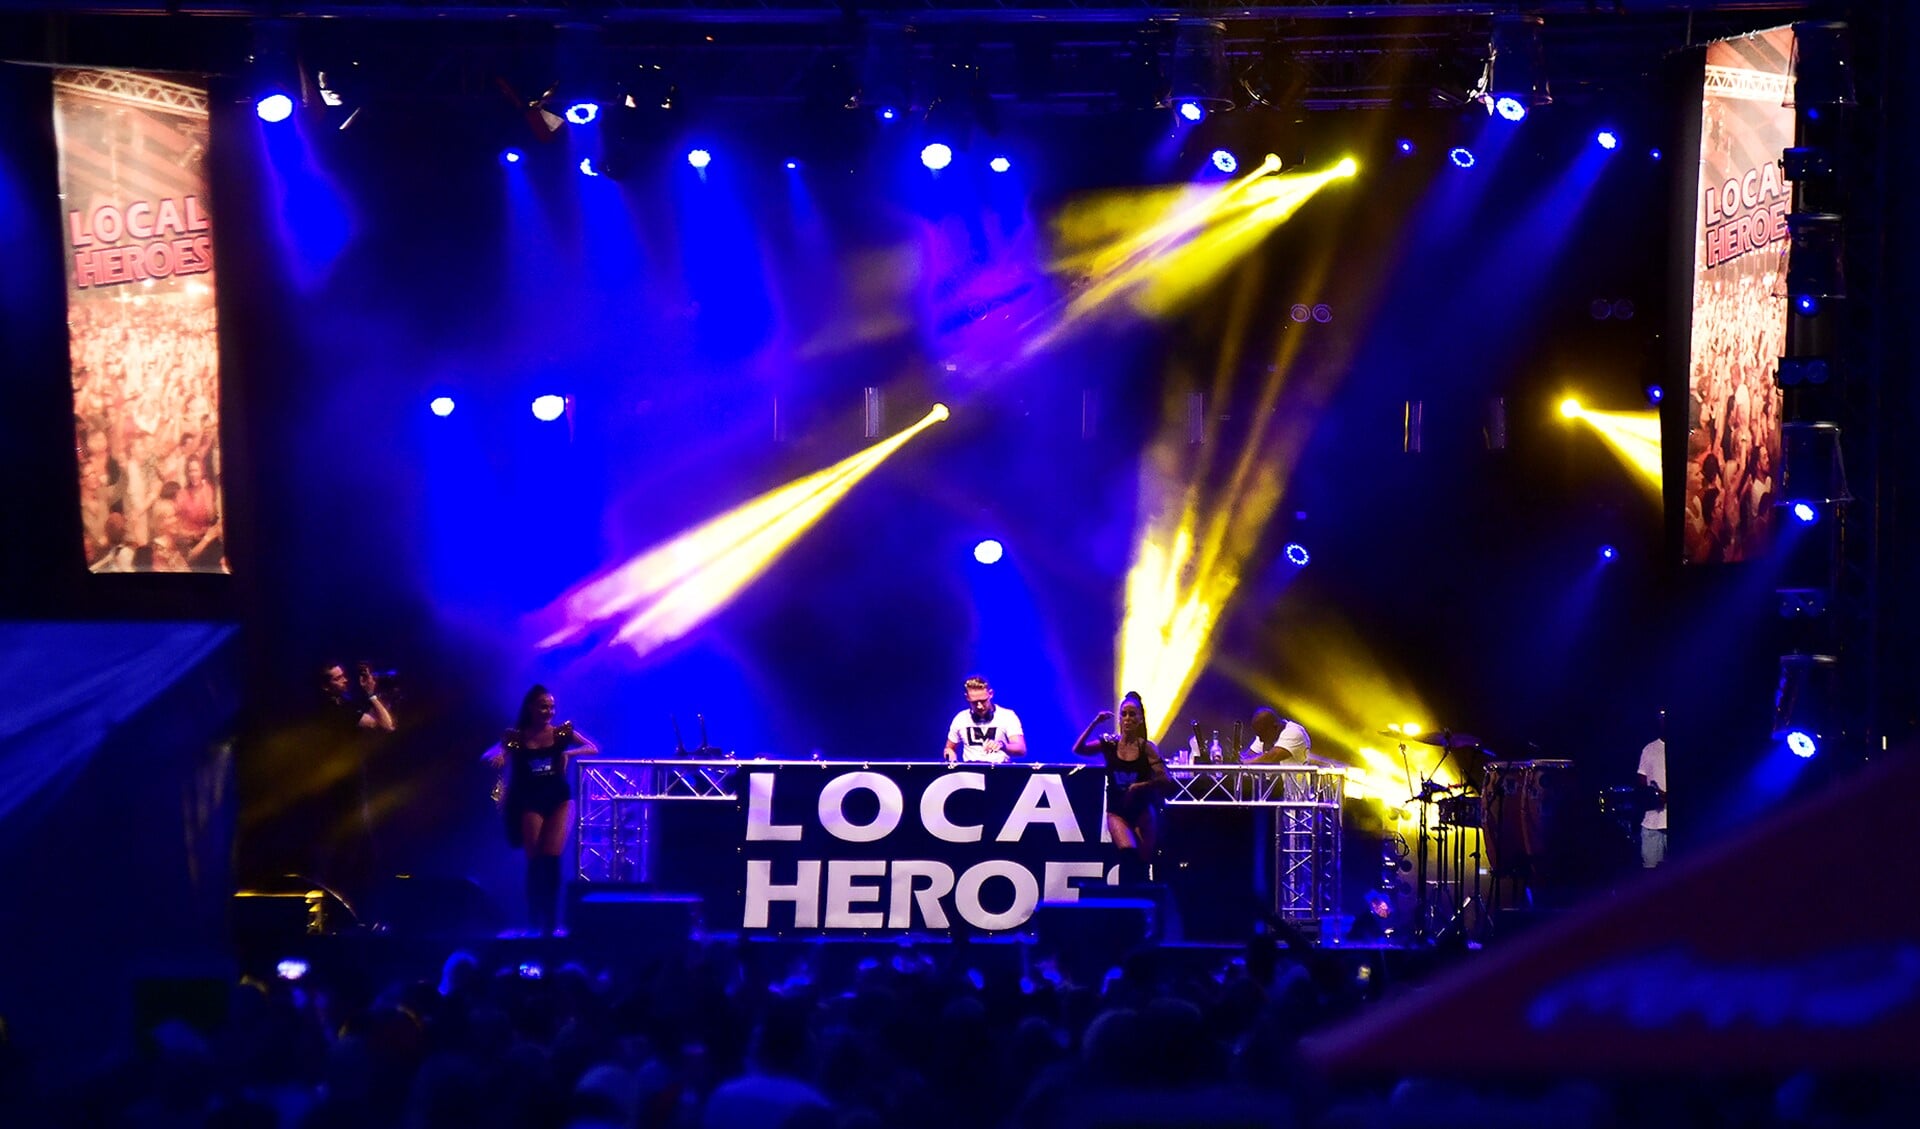 Op vrijdagavond 25 augustus draaien de Local Heroes op het Spijkenisse Festival.